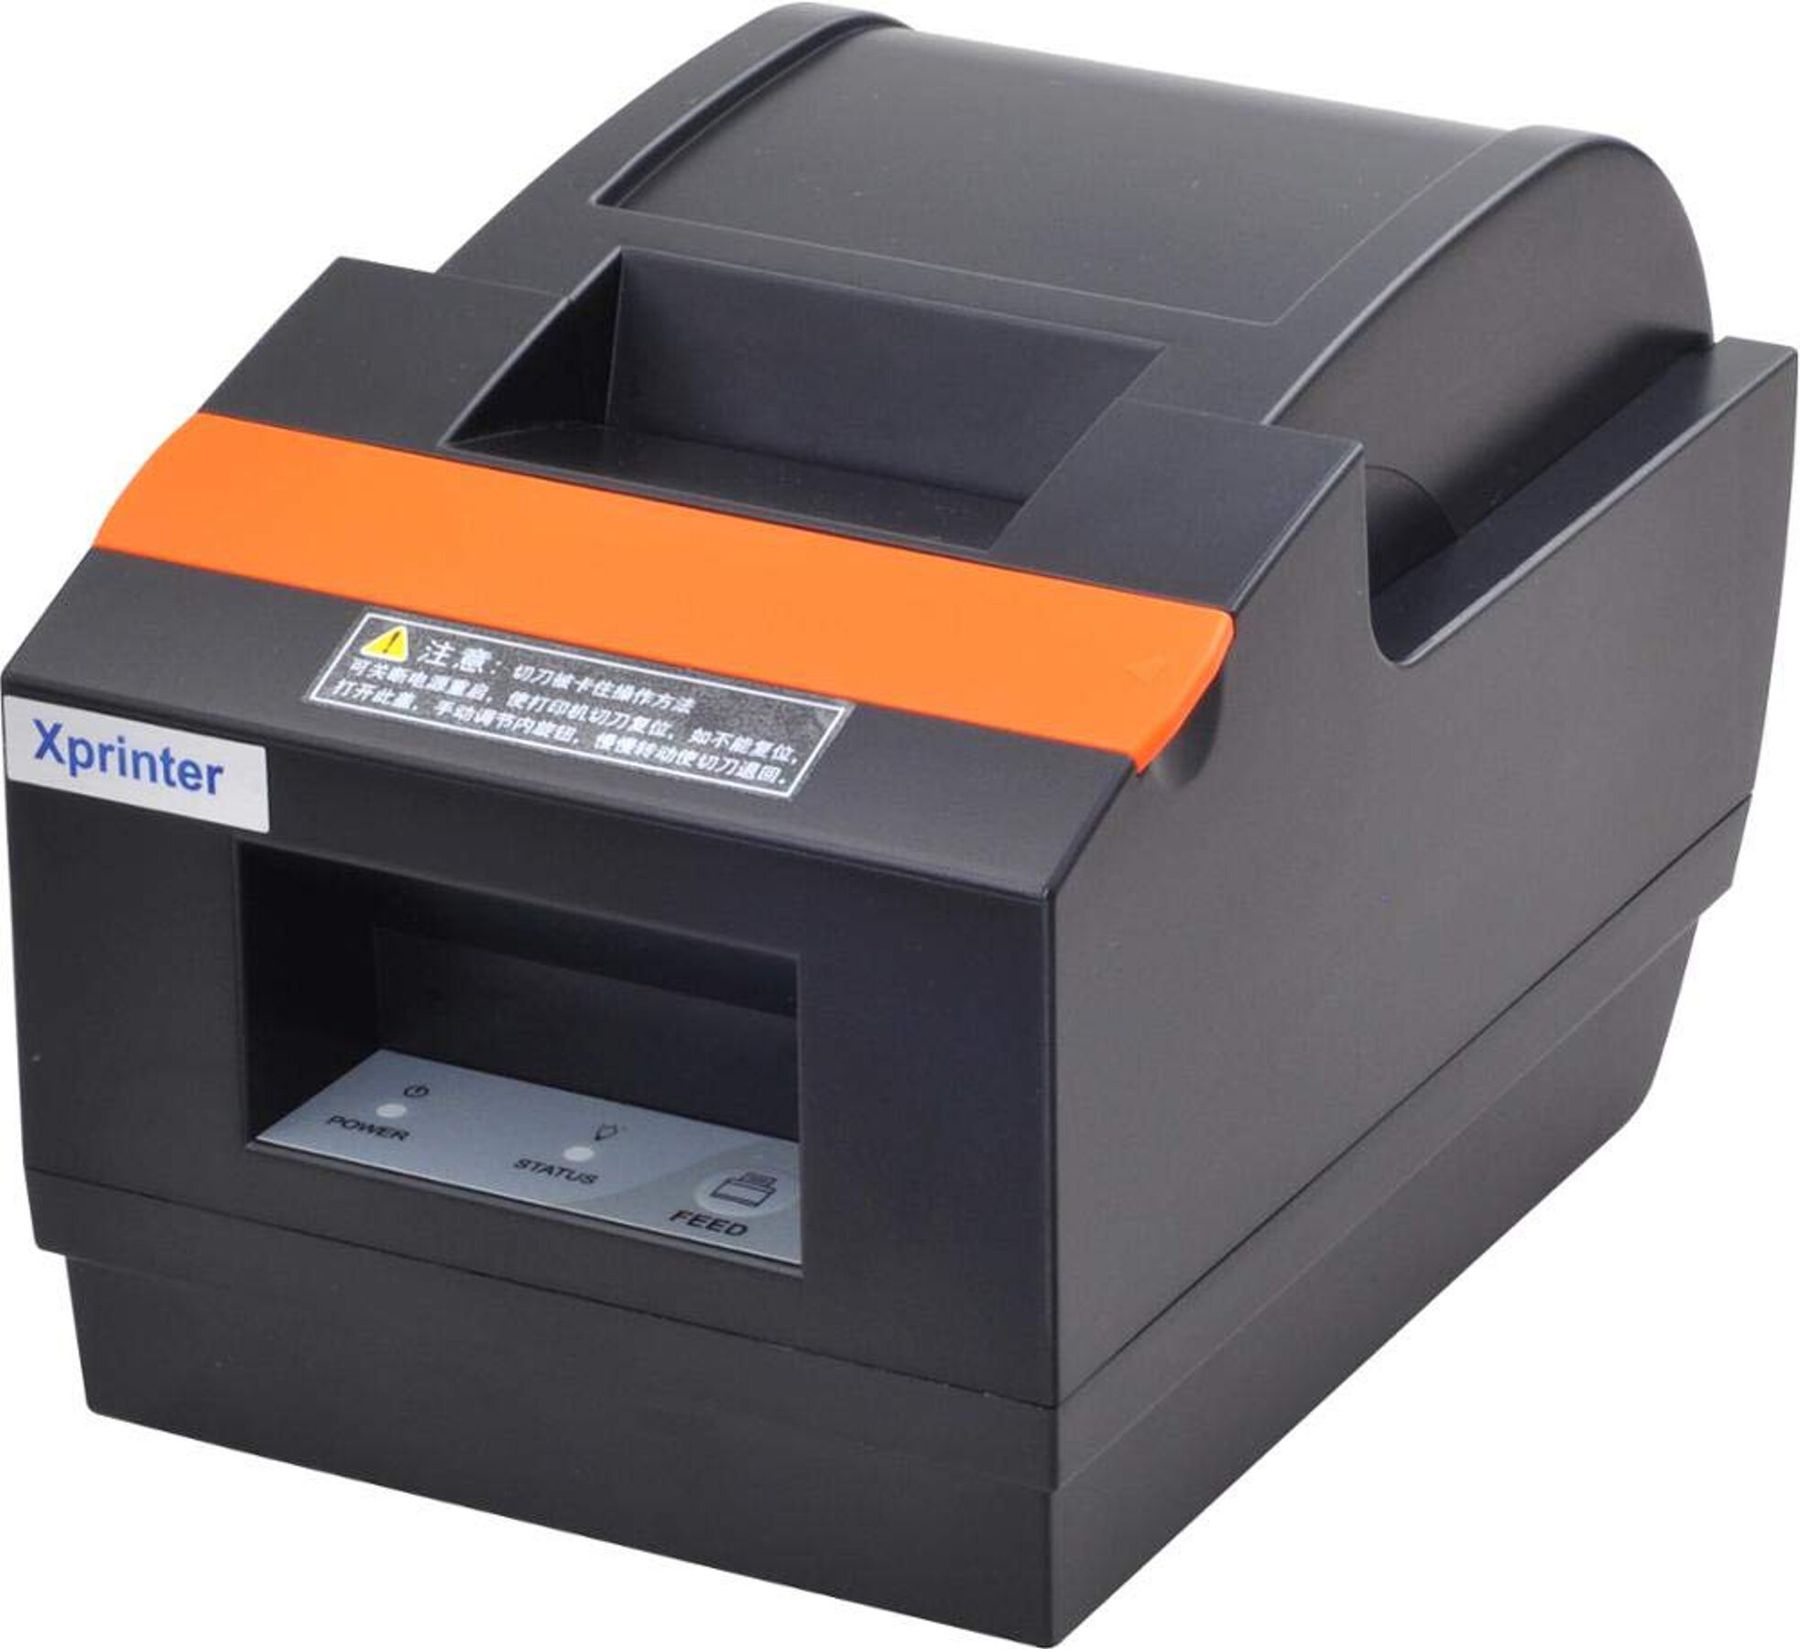 Kvanto Check Thermal Printer Xprinter Xp Q90ec Usb 6062